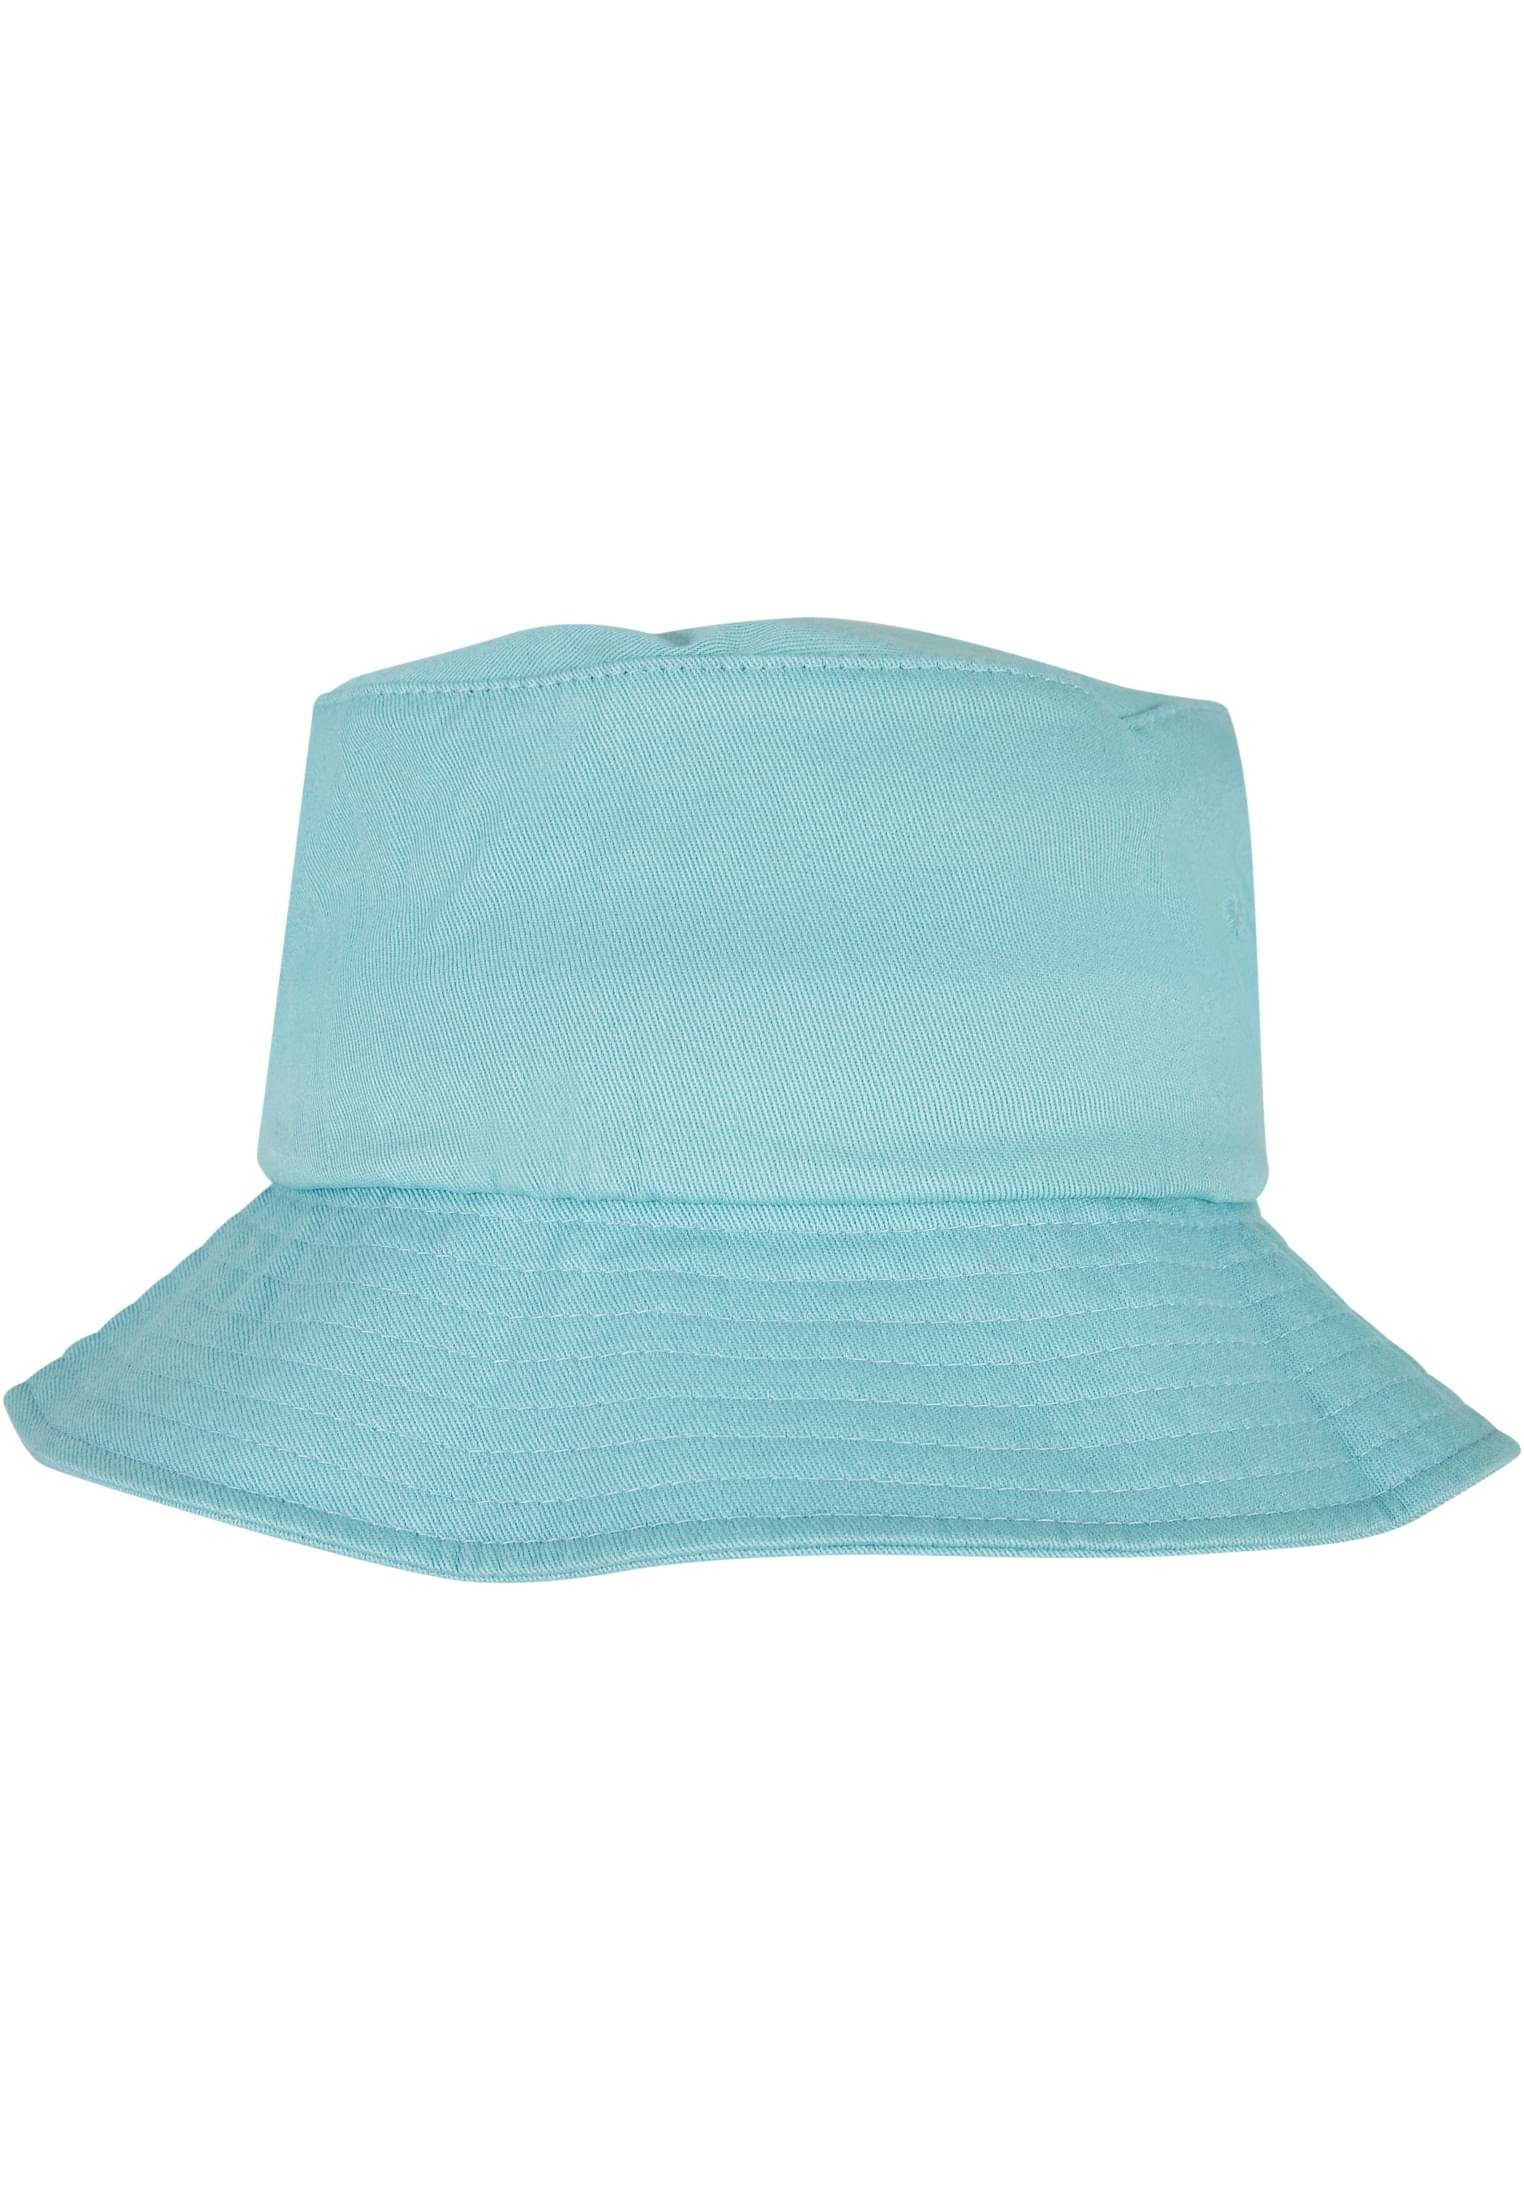 Flexfit Flex Cap Accessoires Flexfit airblue Cotton Hat Bucket Twill